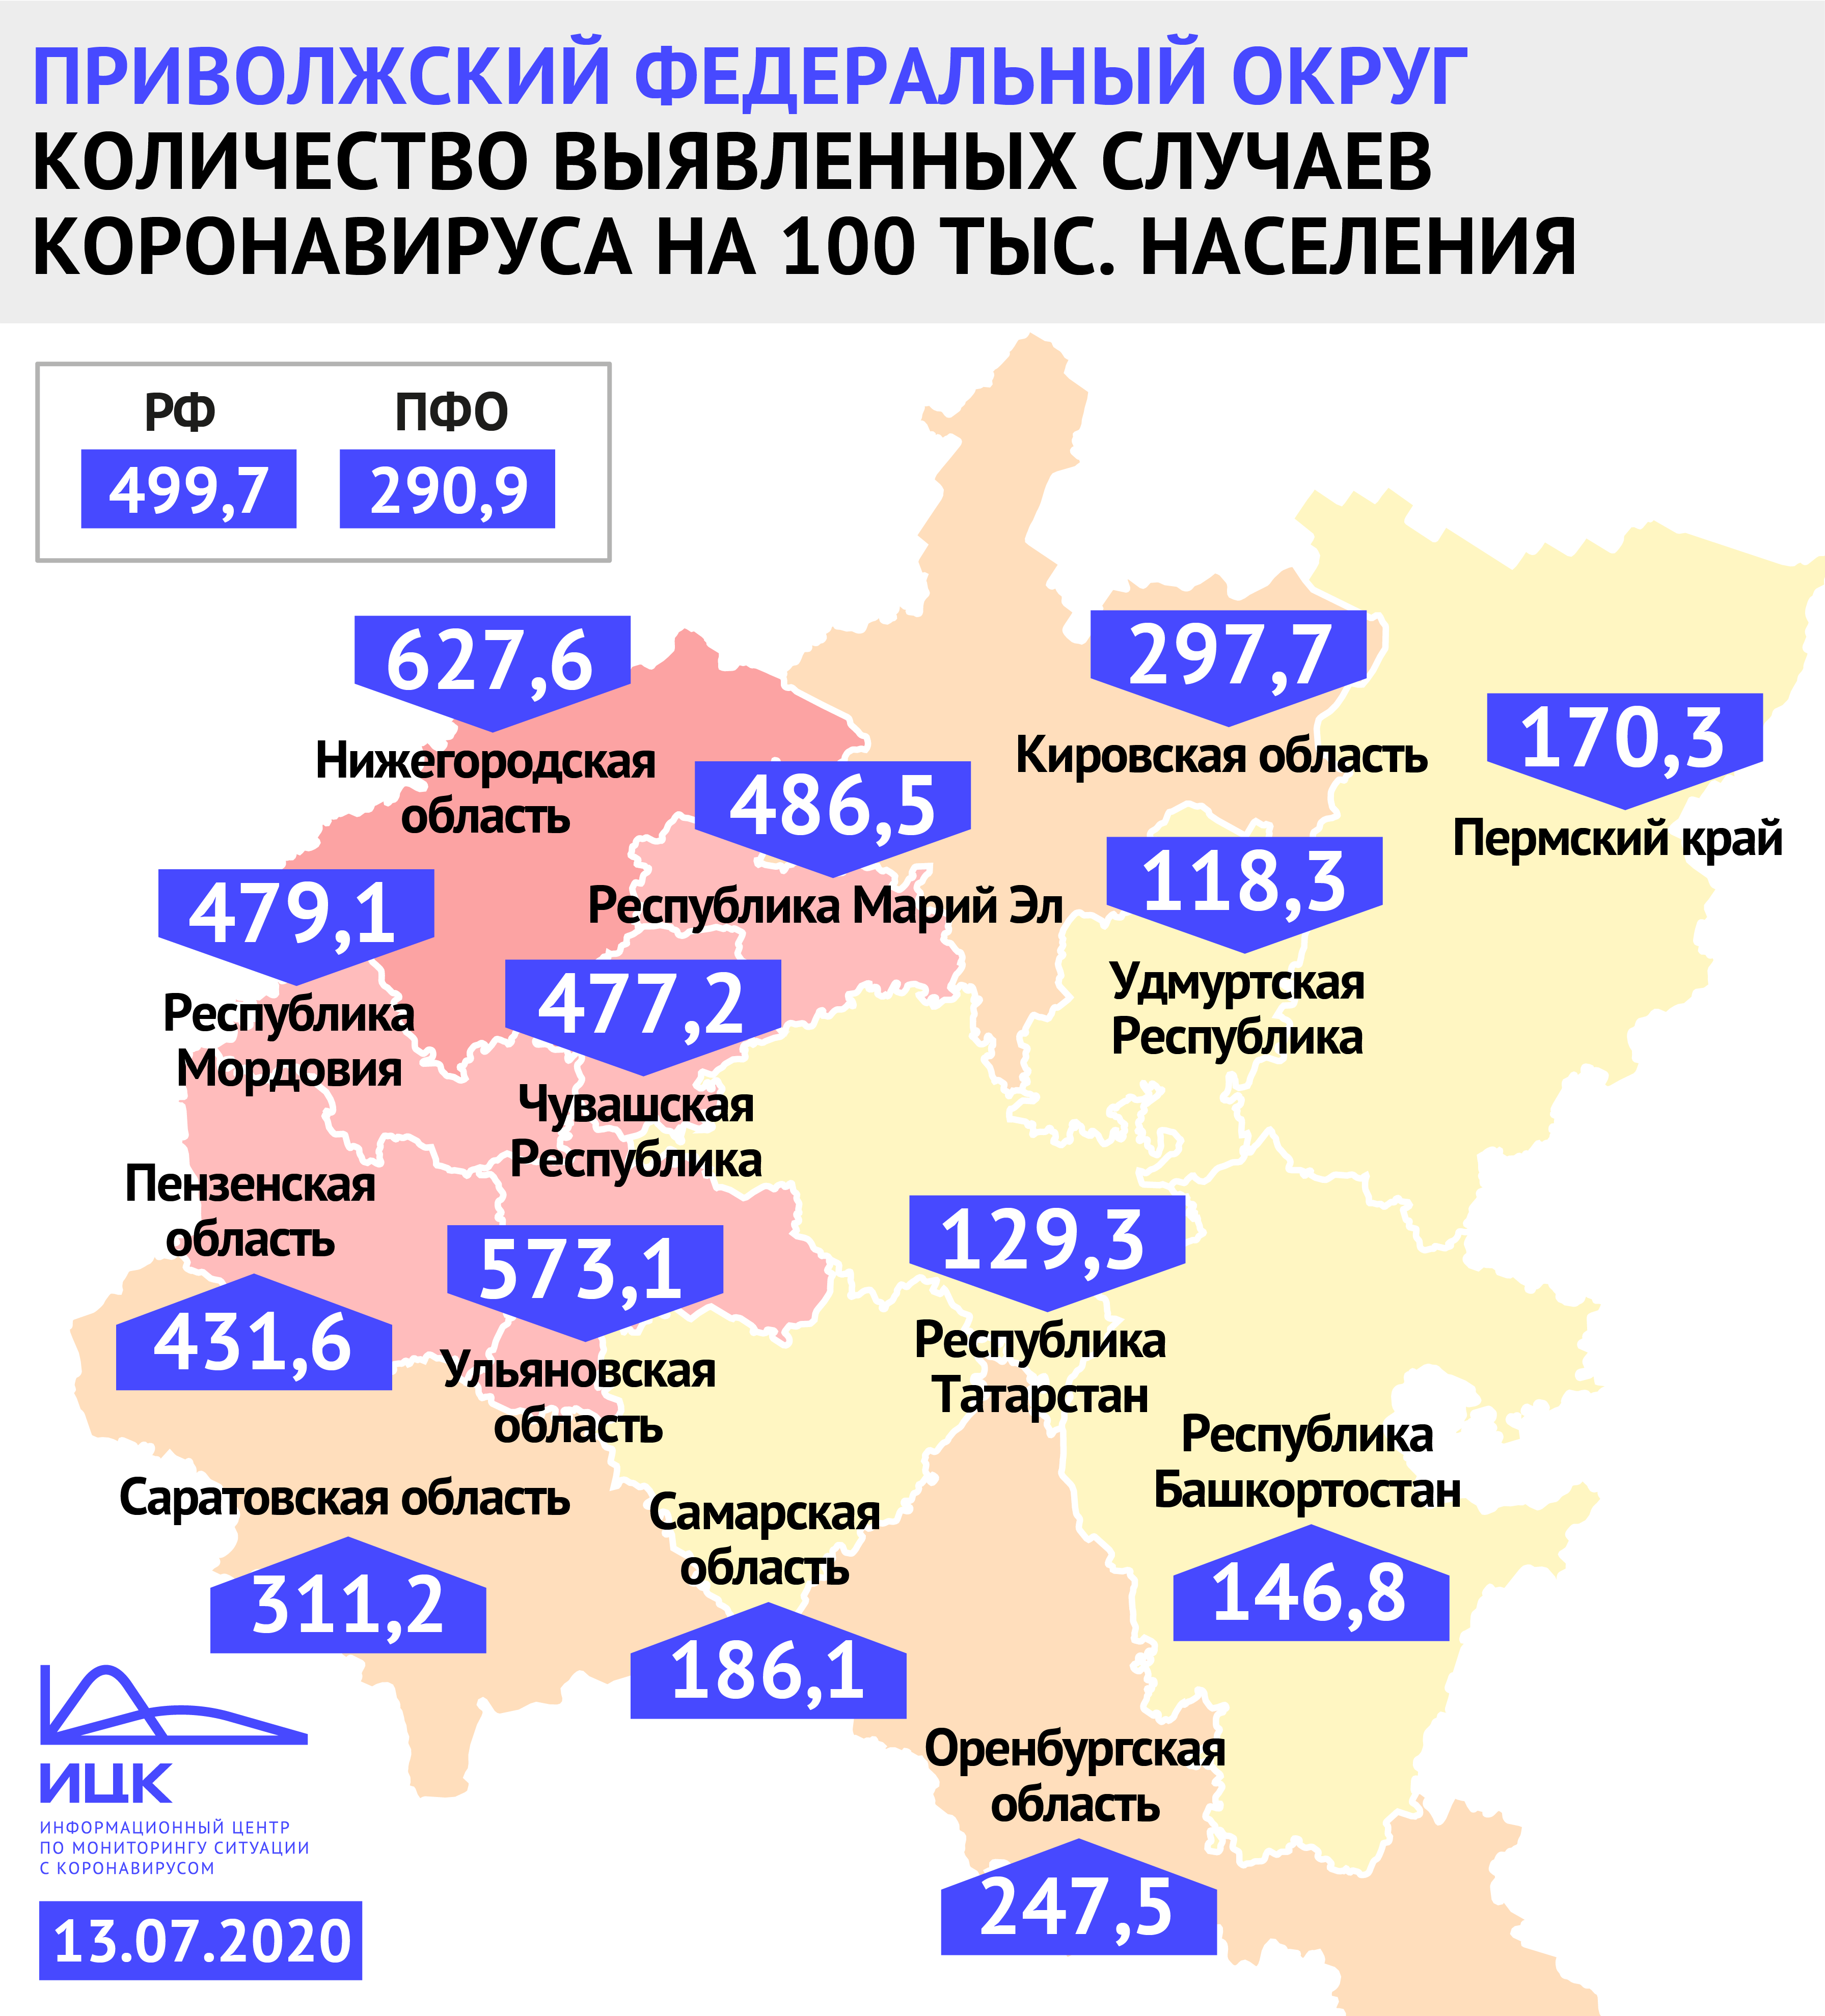 В Пензенской области 431,6 случая коронавируса на 100 тысяч жителей